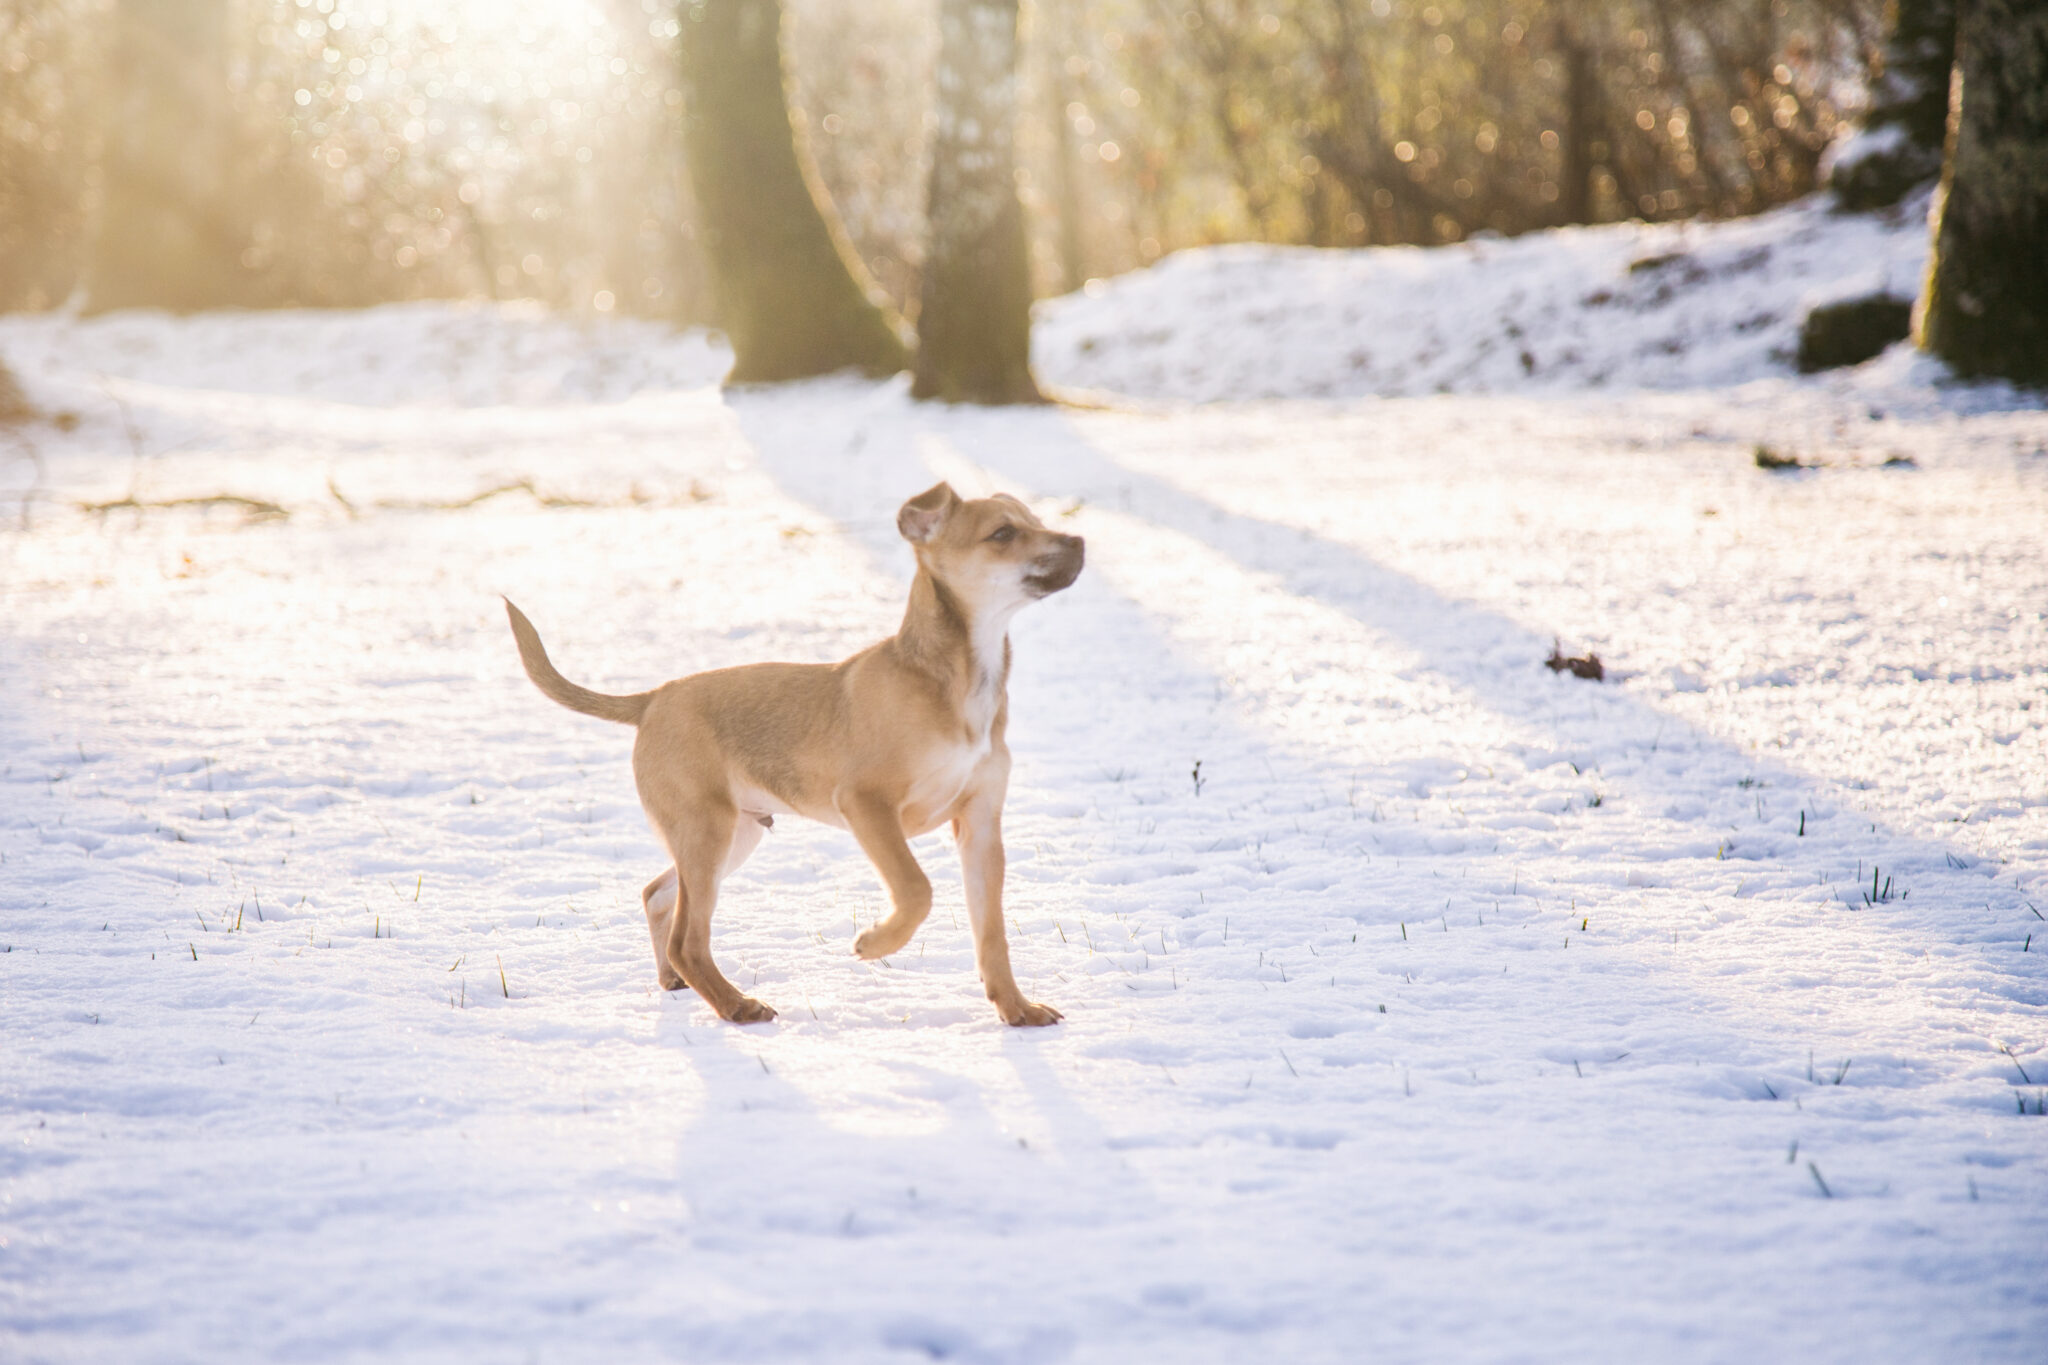 Photographe animalier, chien, bébé chien, neige, chien dans la neige, photo de chiot, chihuahua, Eternel Présent